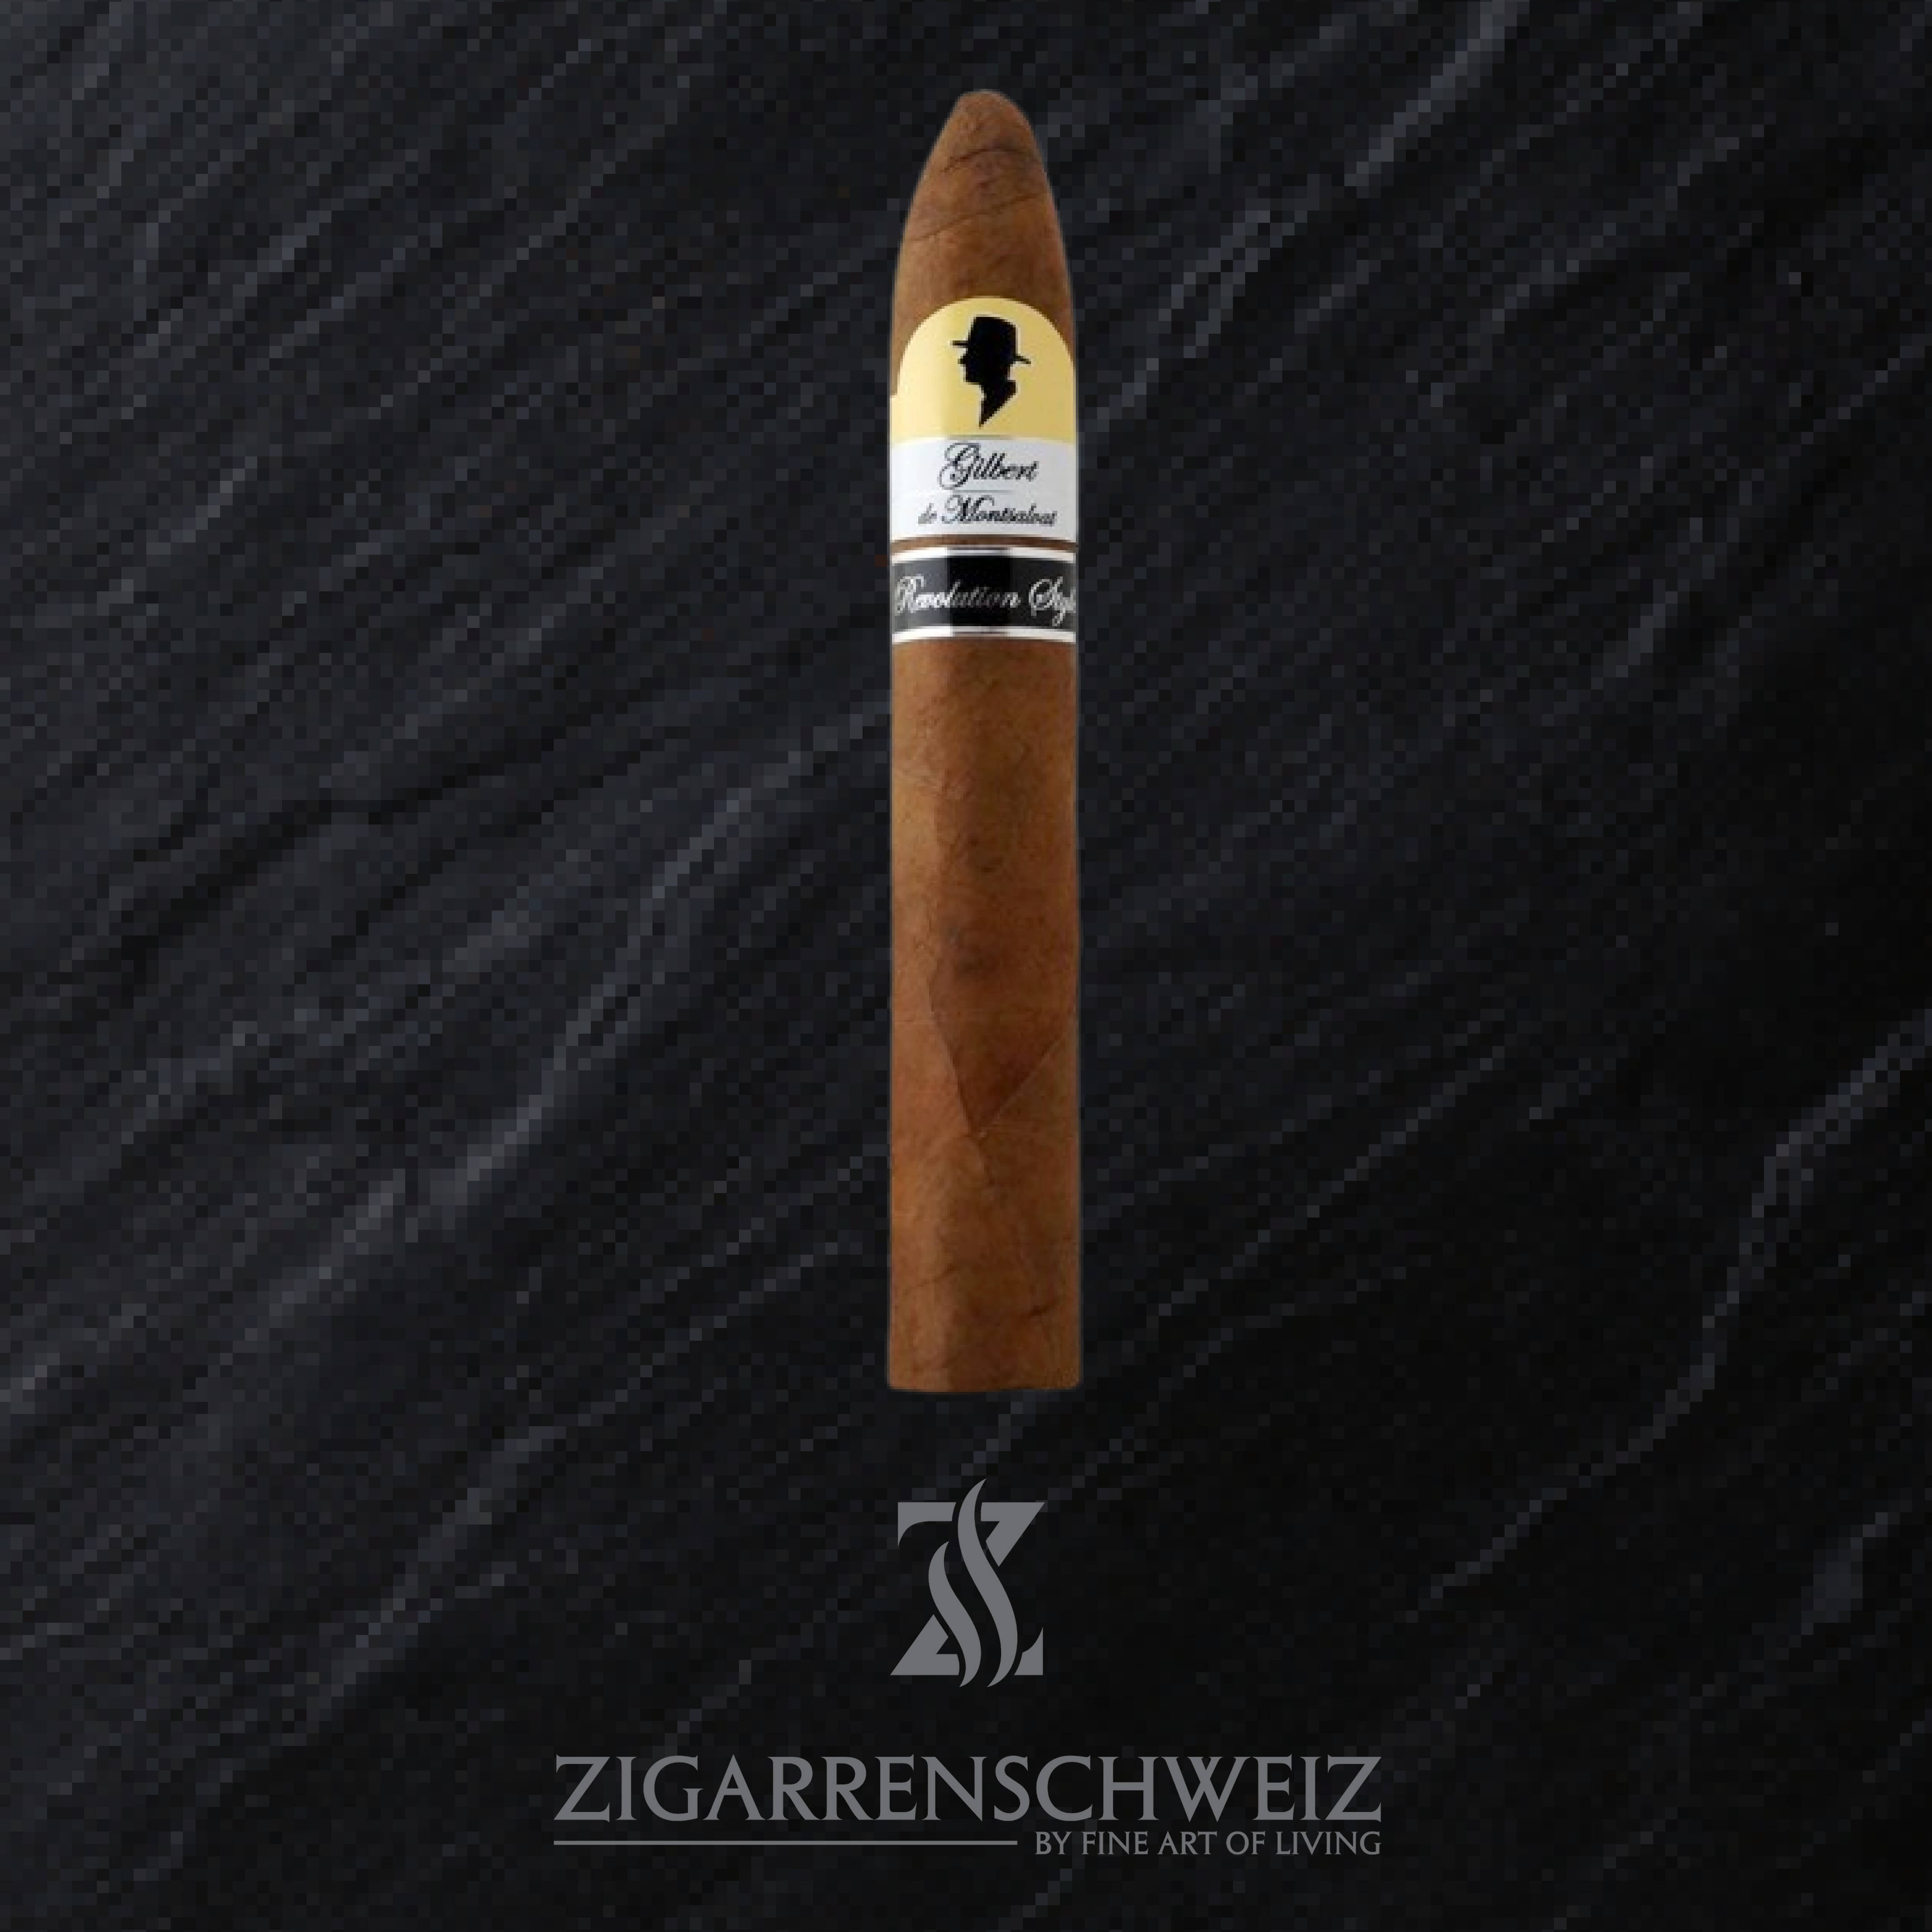 Gilbert de Montsalvat Revolution Style Belicolissimo Zigarre